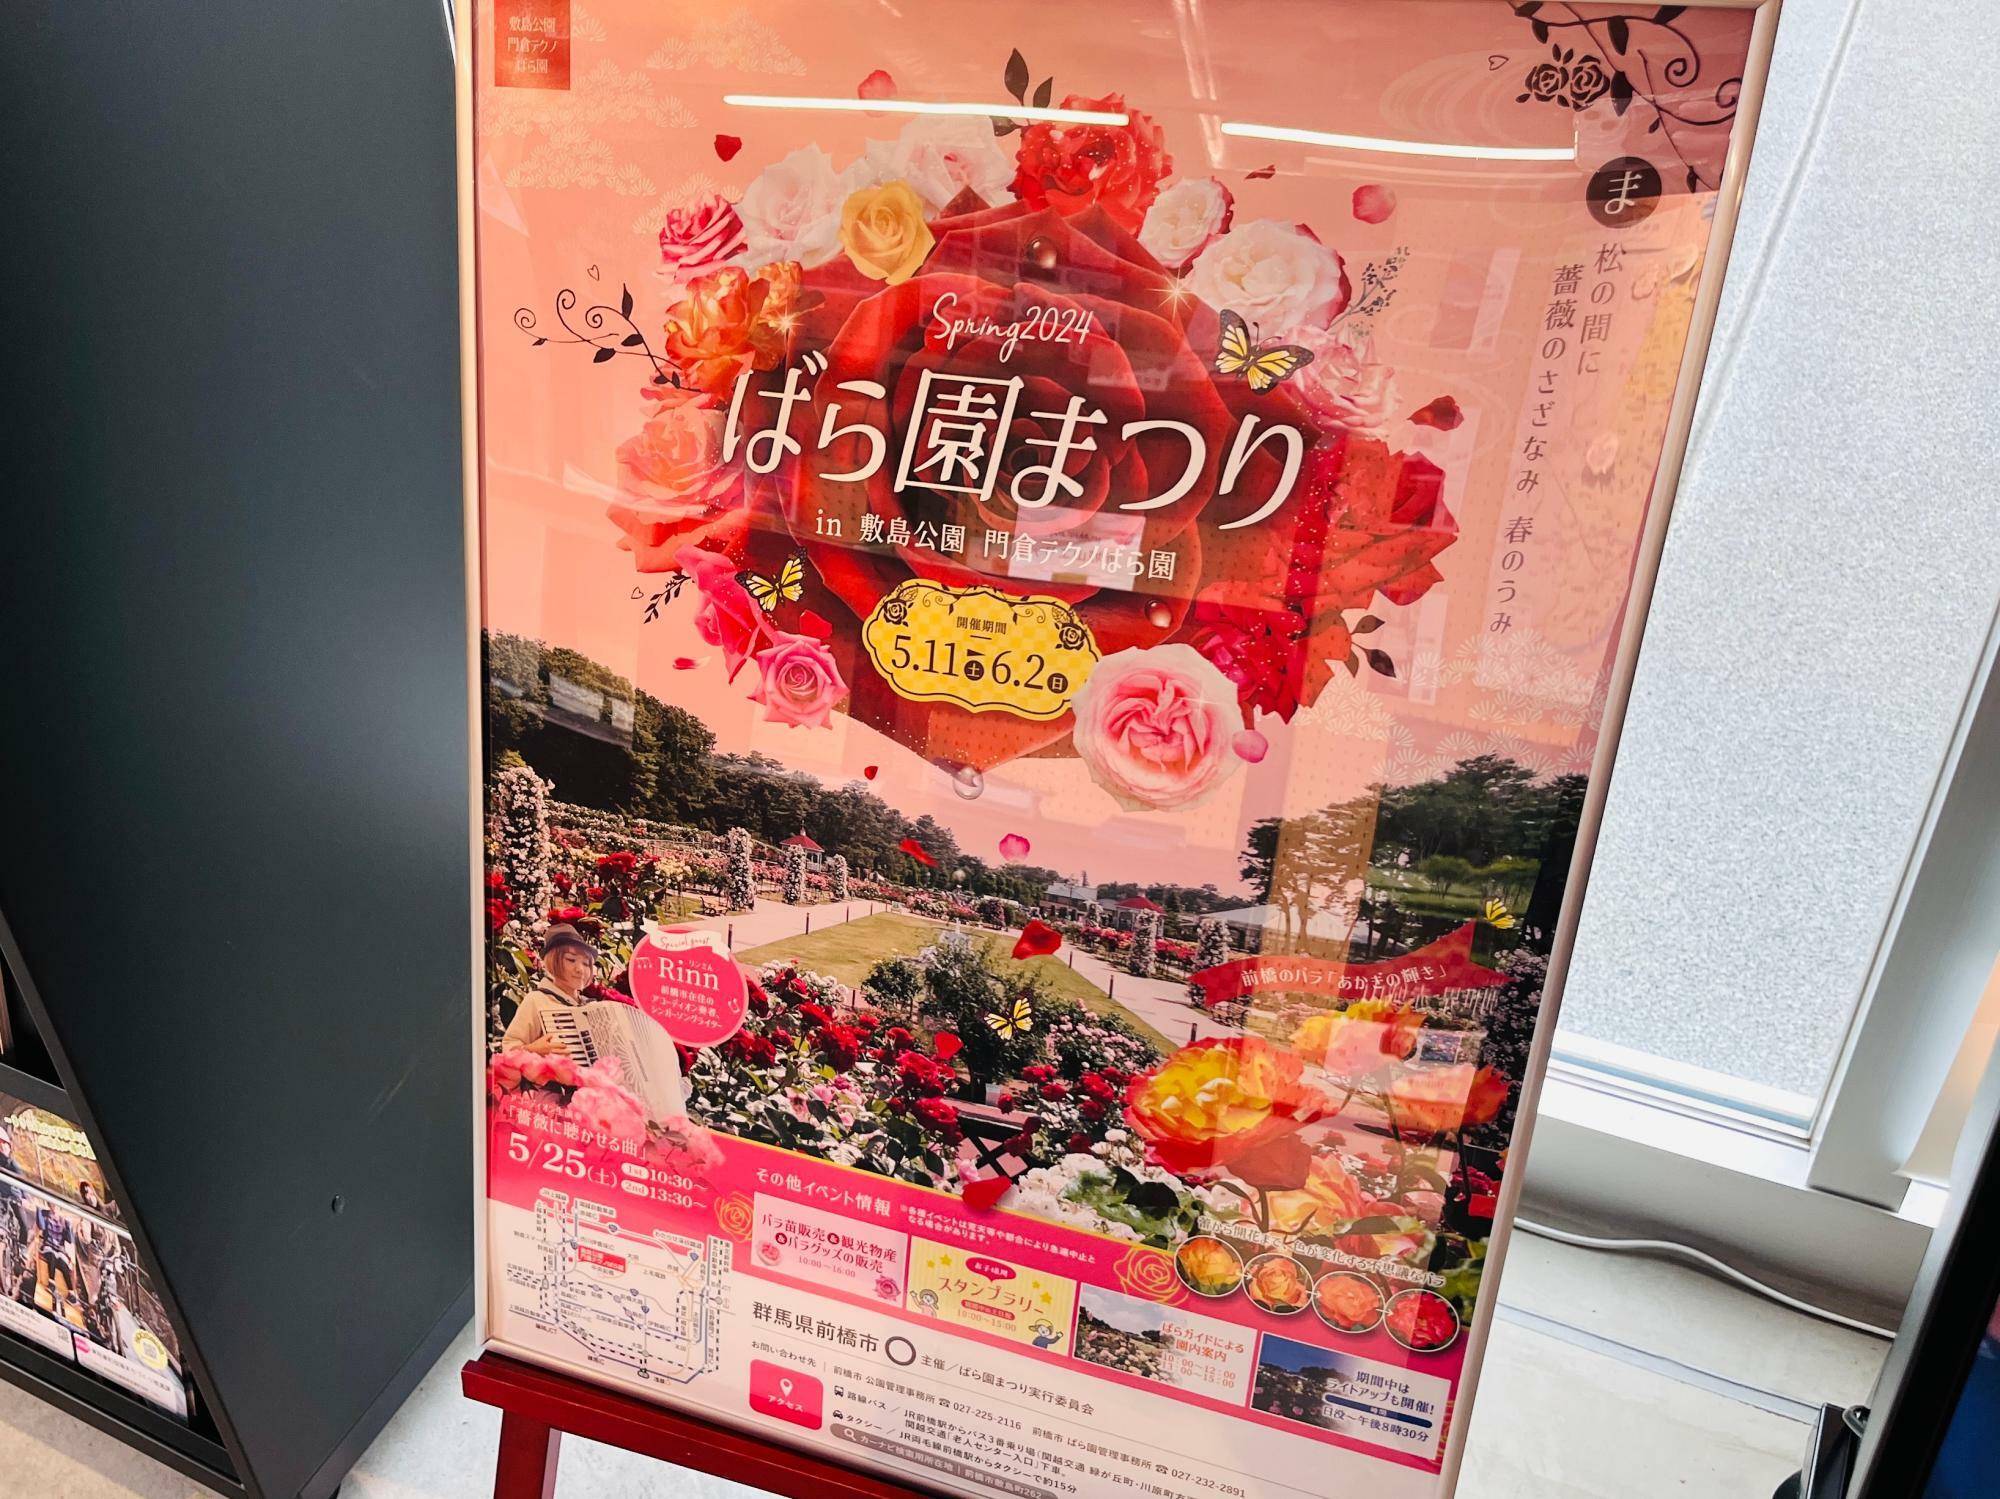 「春のばら園まつり」開催告知のポスター